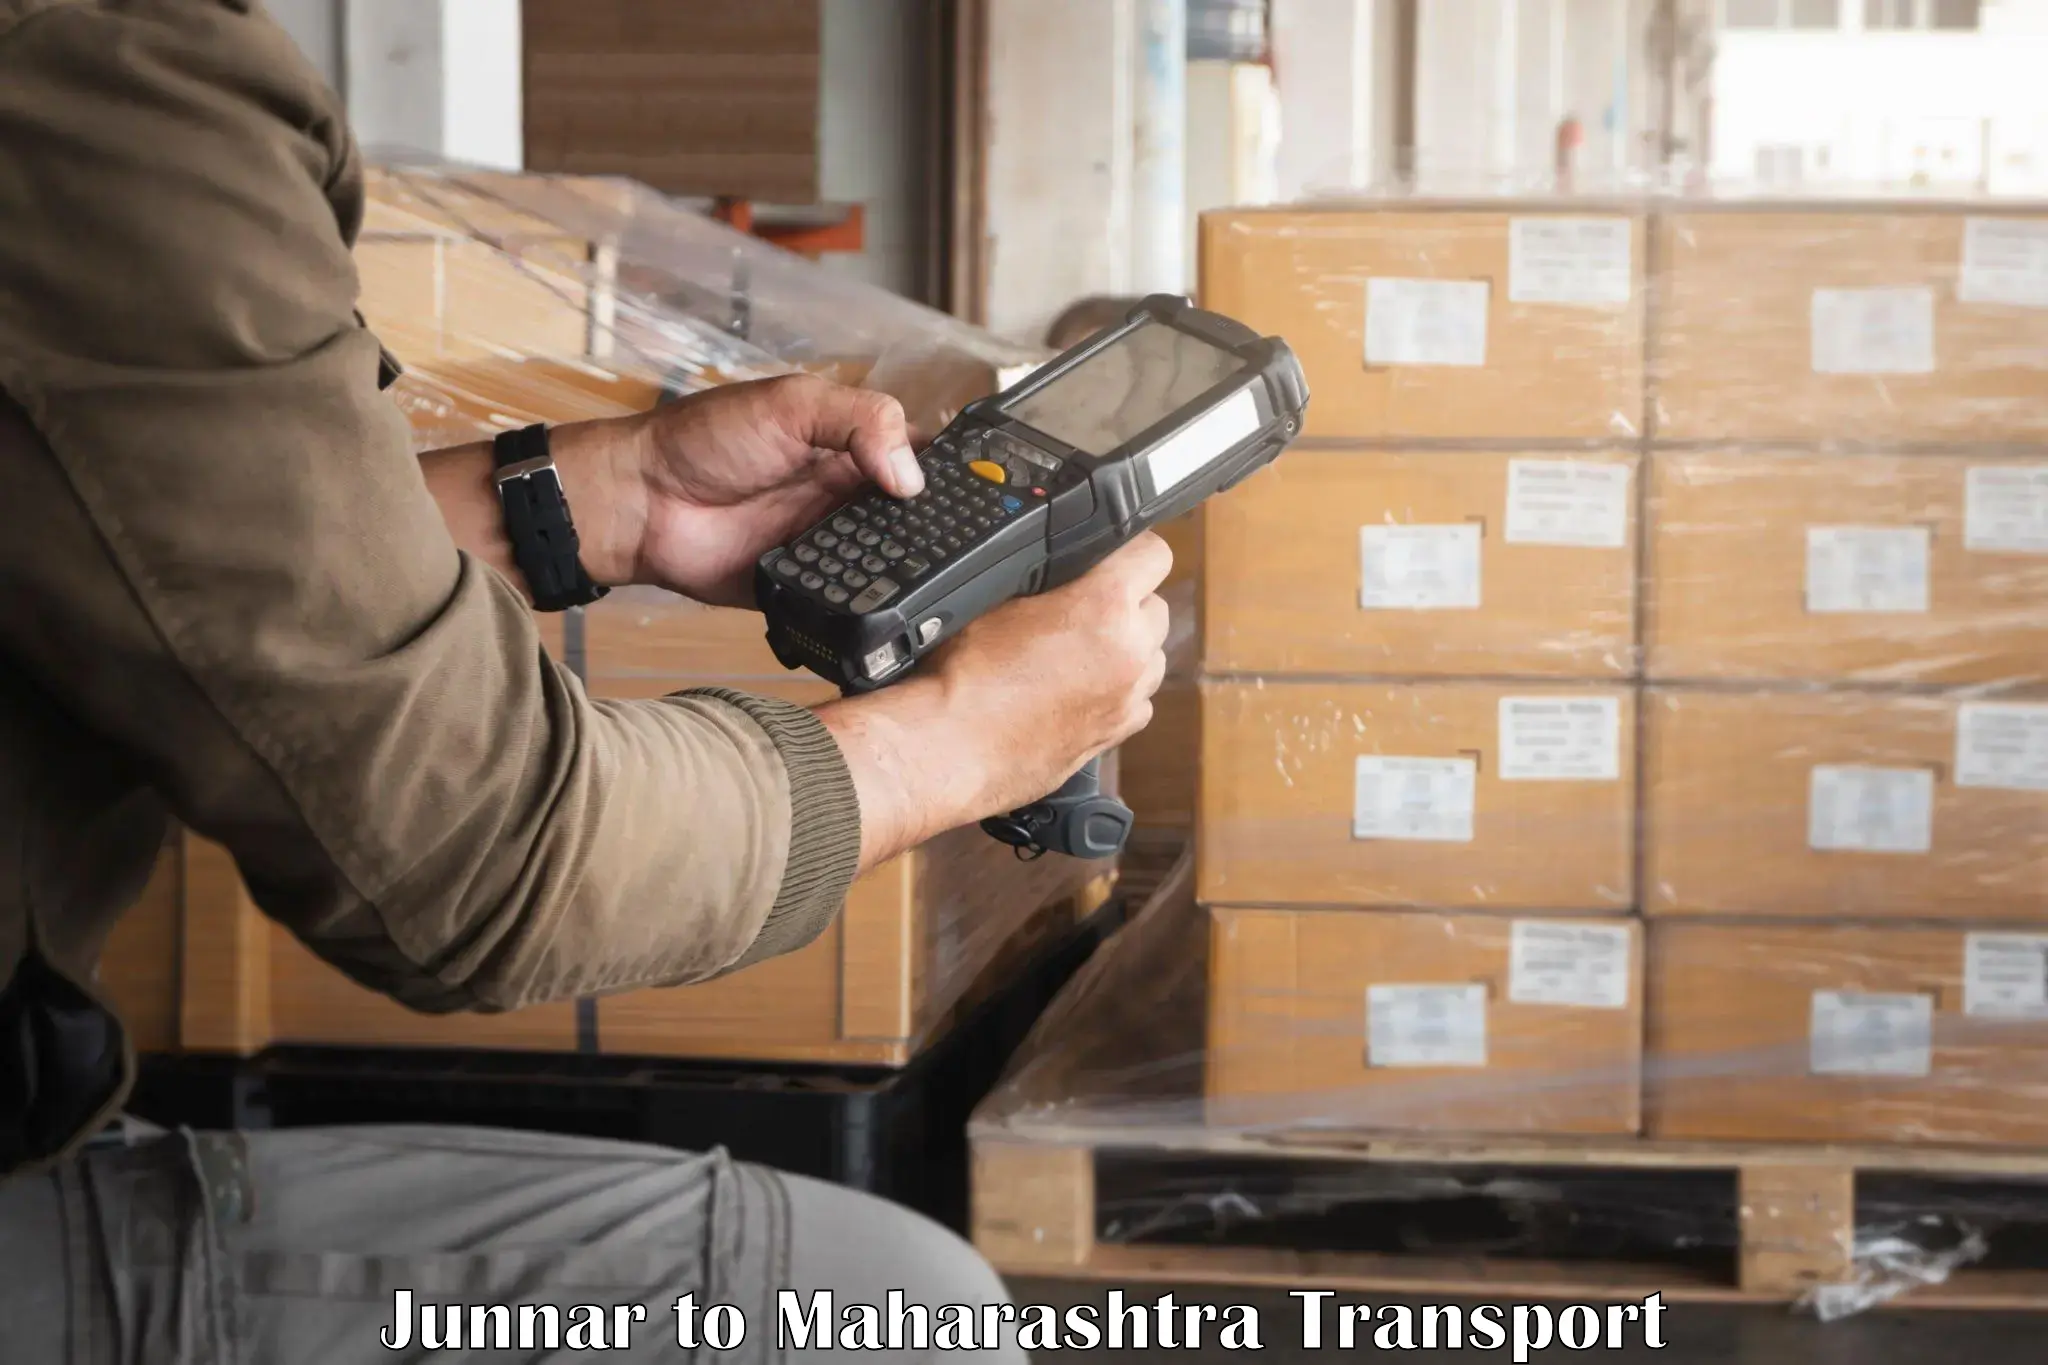 Parcel transport services Junnar to Navi Mumbai